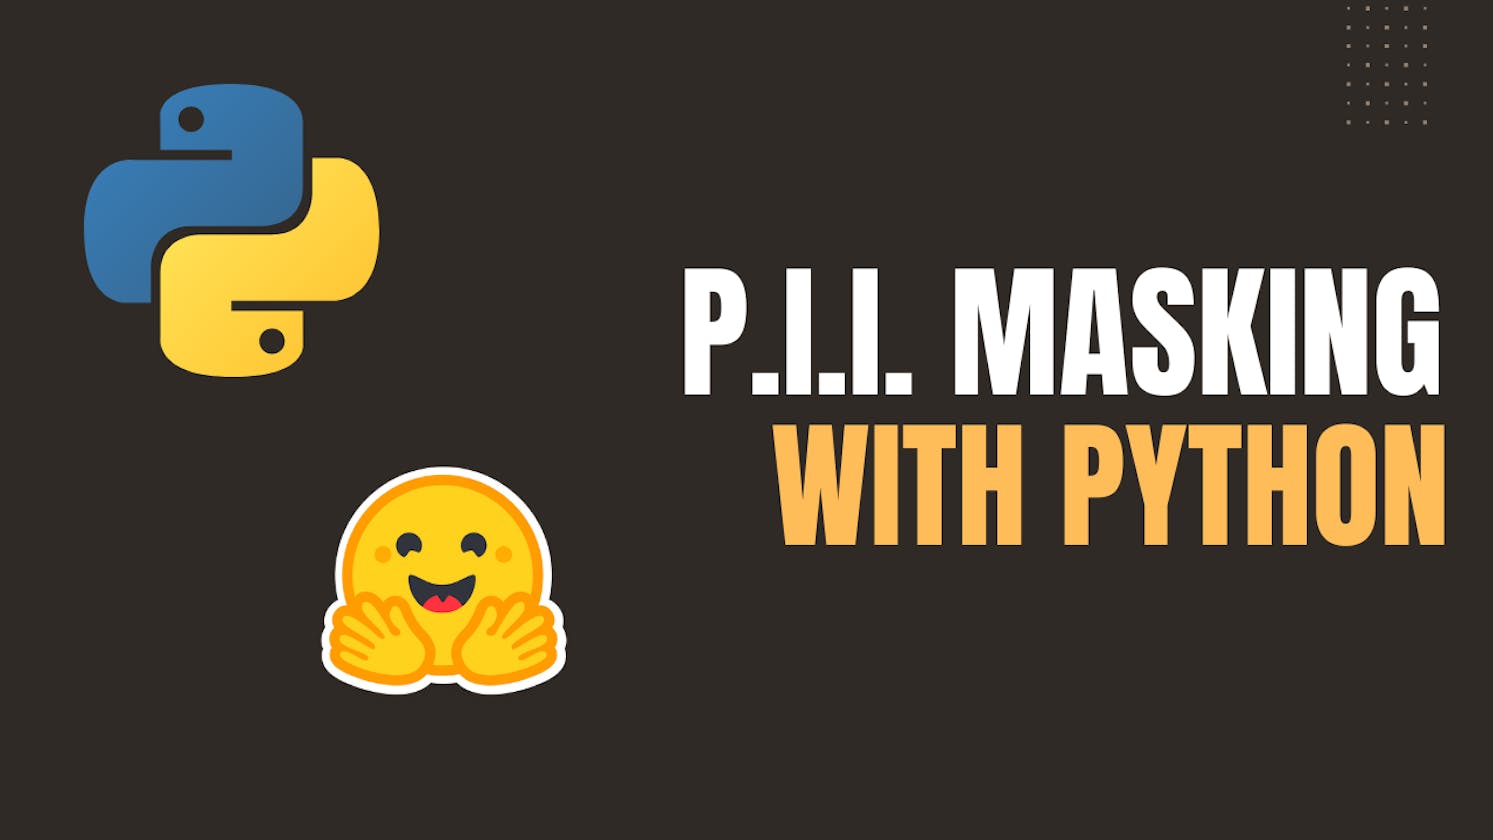 PII Masking With Python Using Machine Learning Model